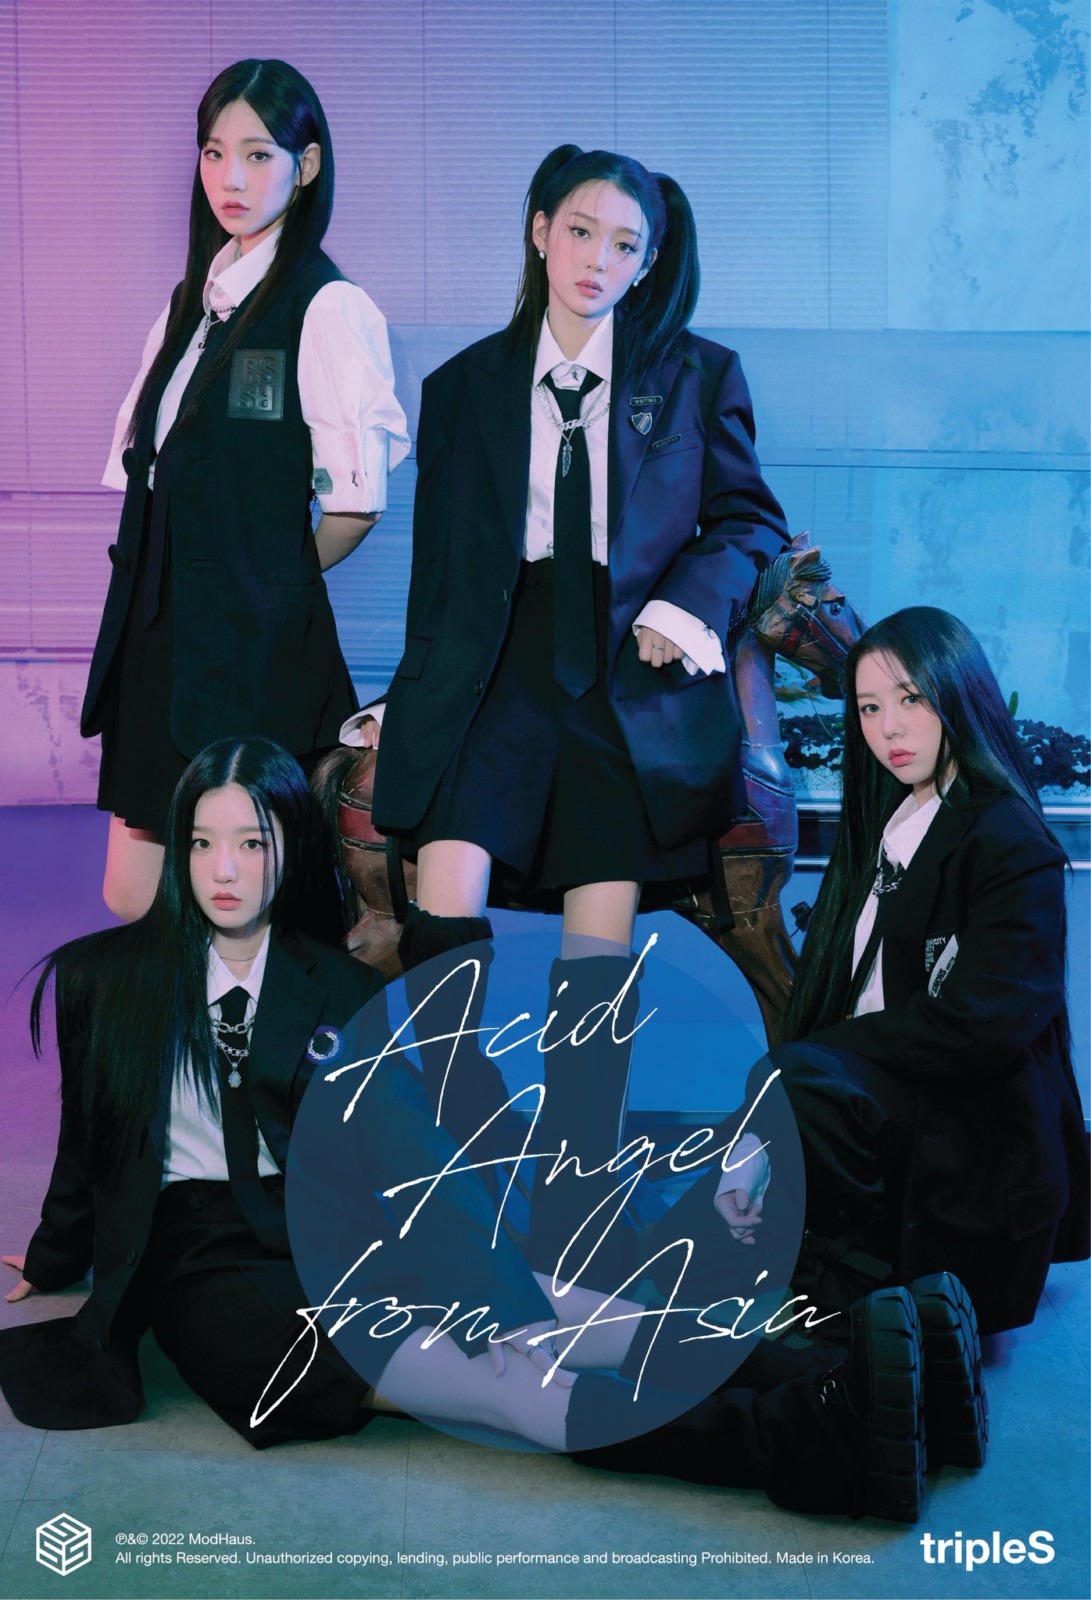 デビュー予定の24人組ガールズグループ内サブユニット『Acid Angel from Asia.SSS (AAA)』がデビューアルバム「ACCESS (アクセス)」で先行デビュー！